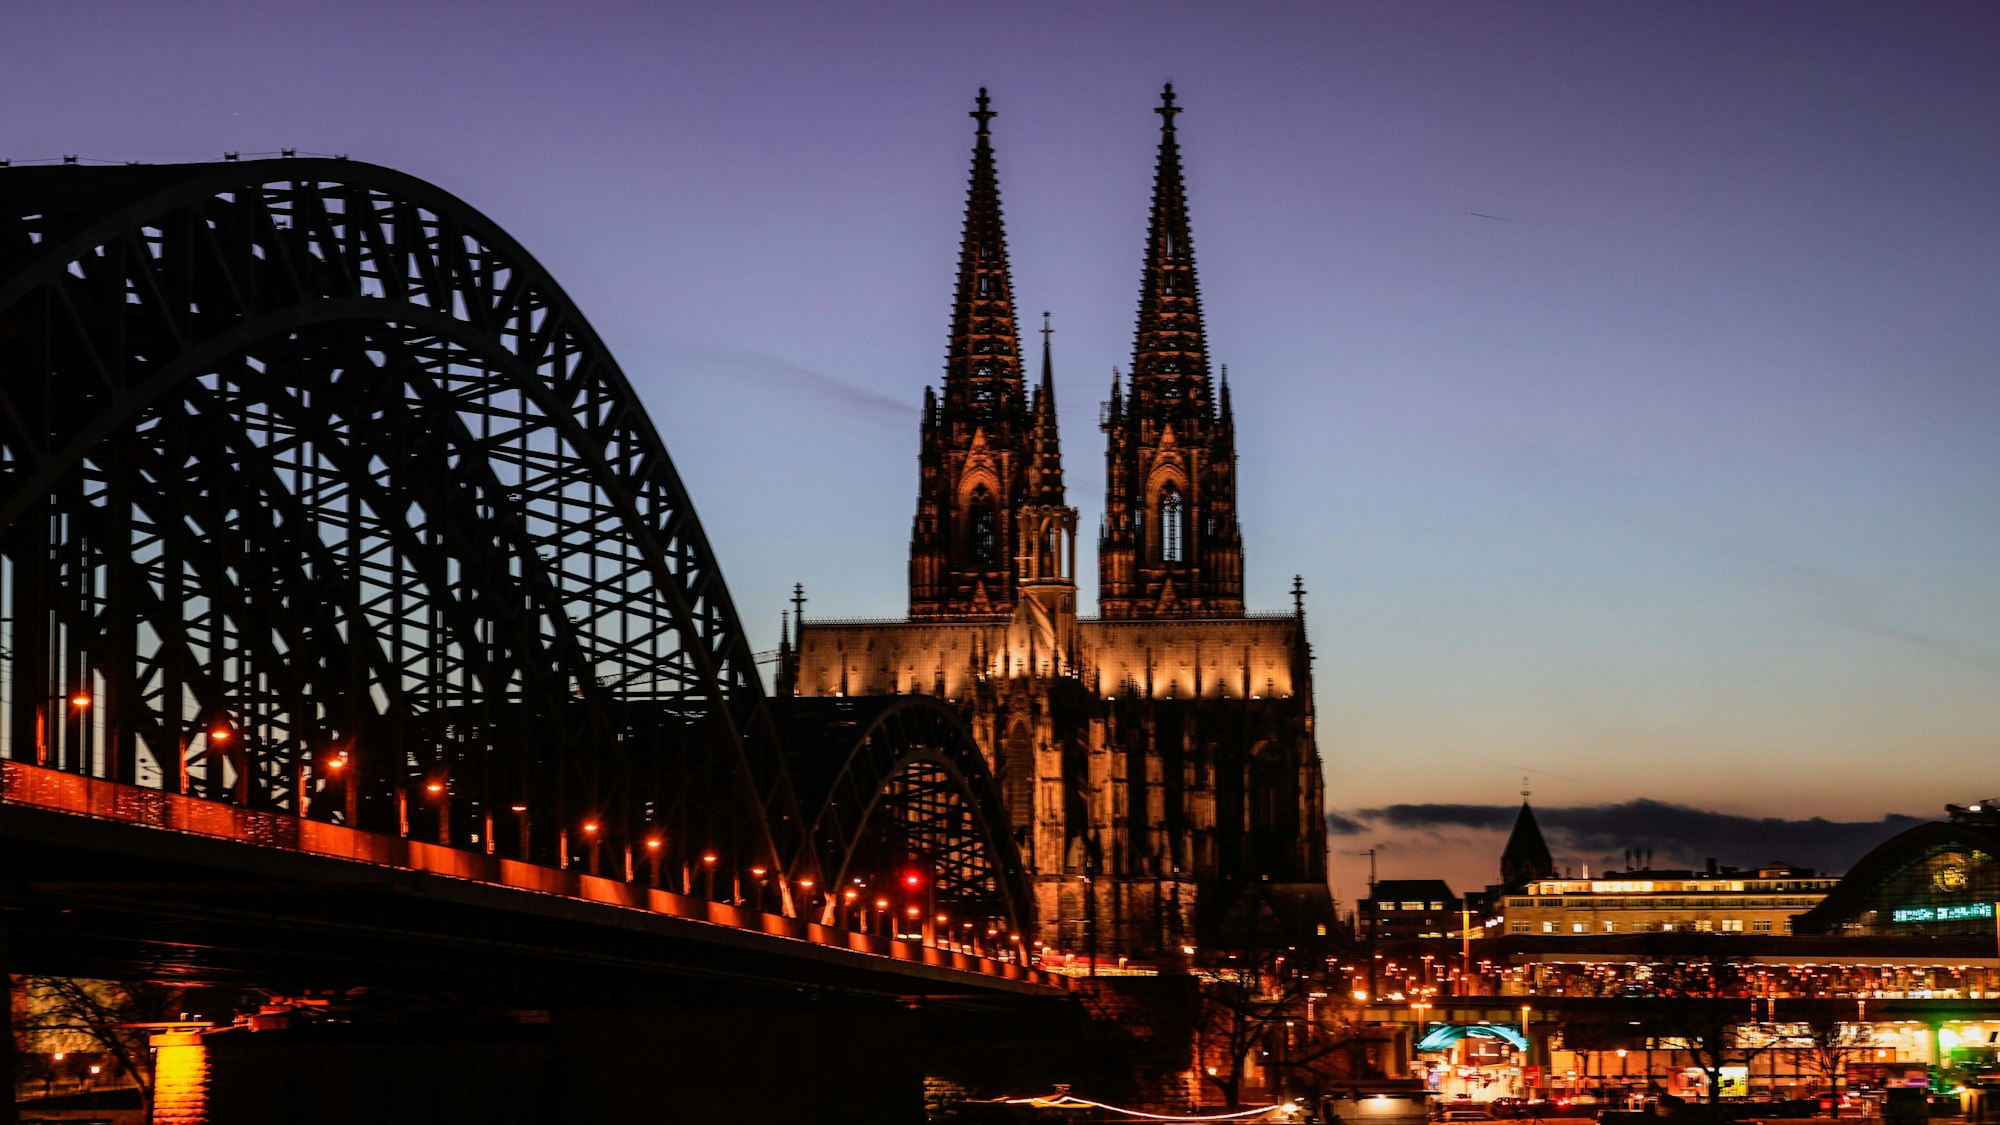 Der Dom und die Hohenzollernbrücke sind am Abend beleuchtet.